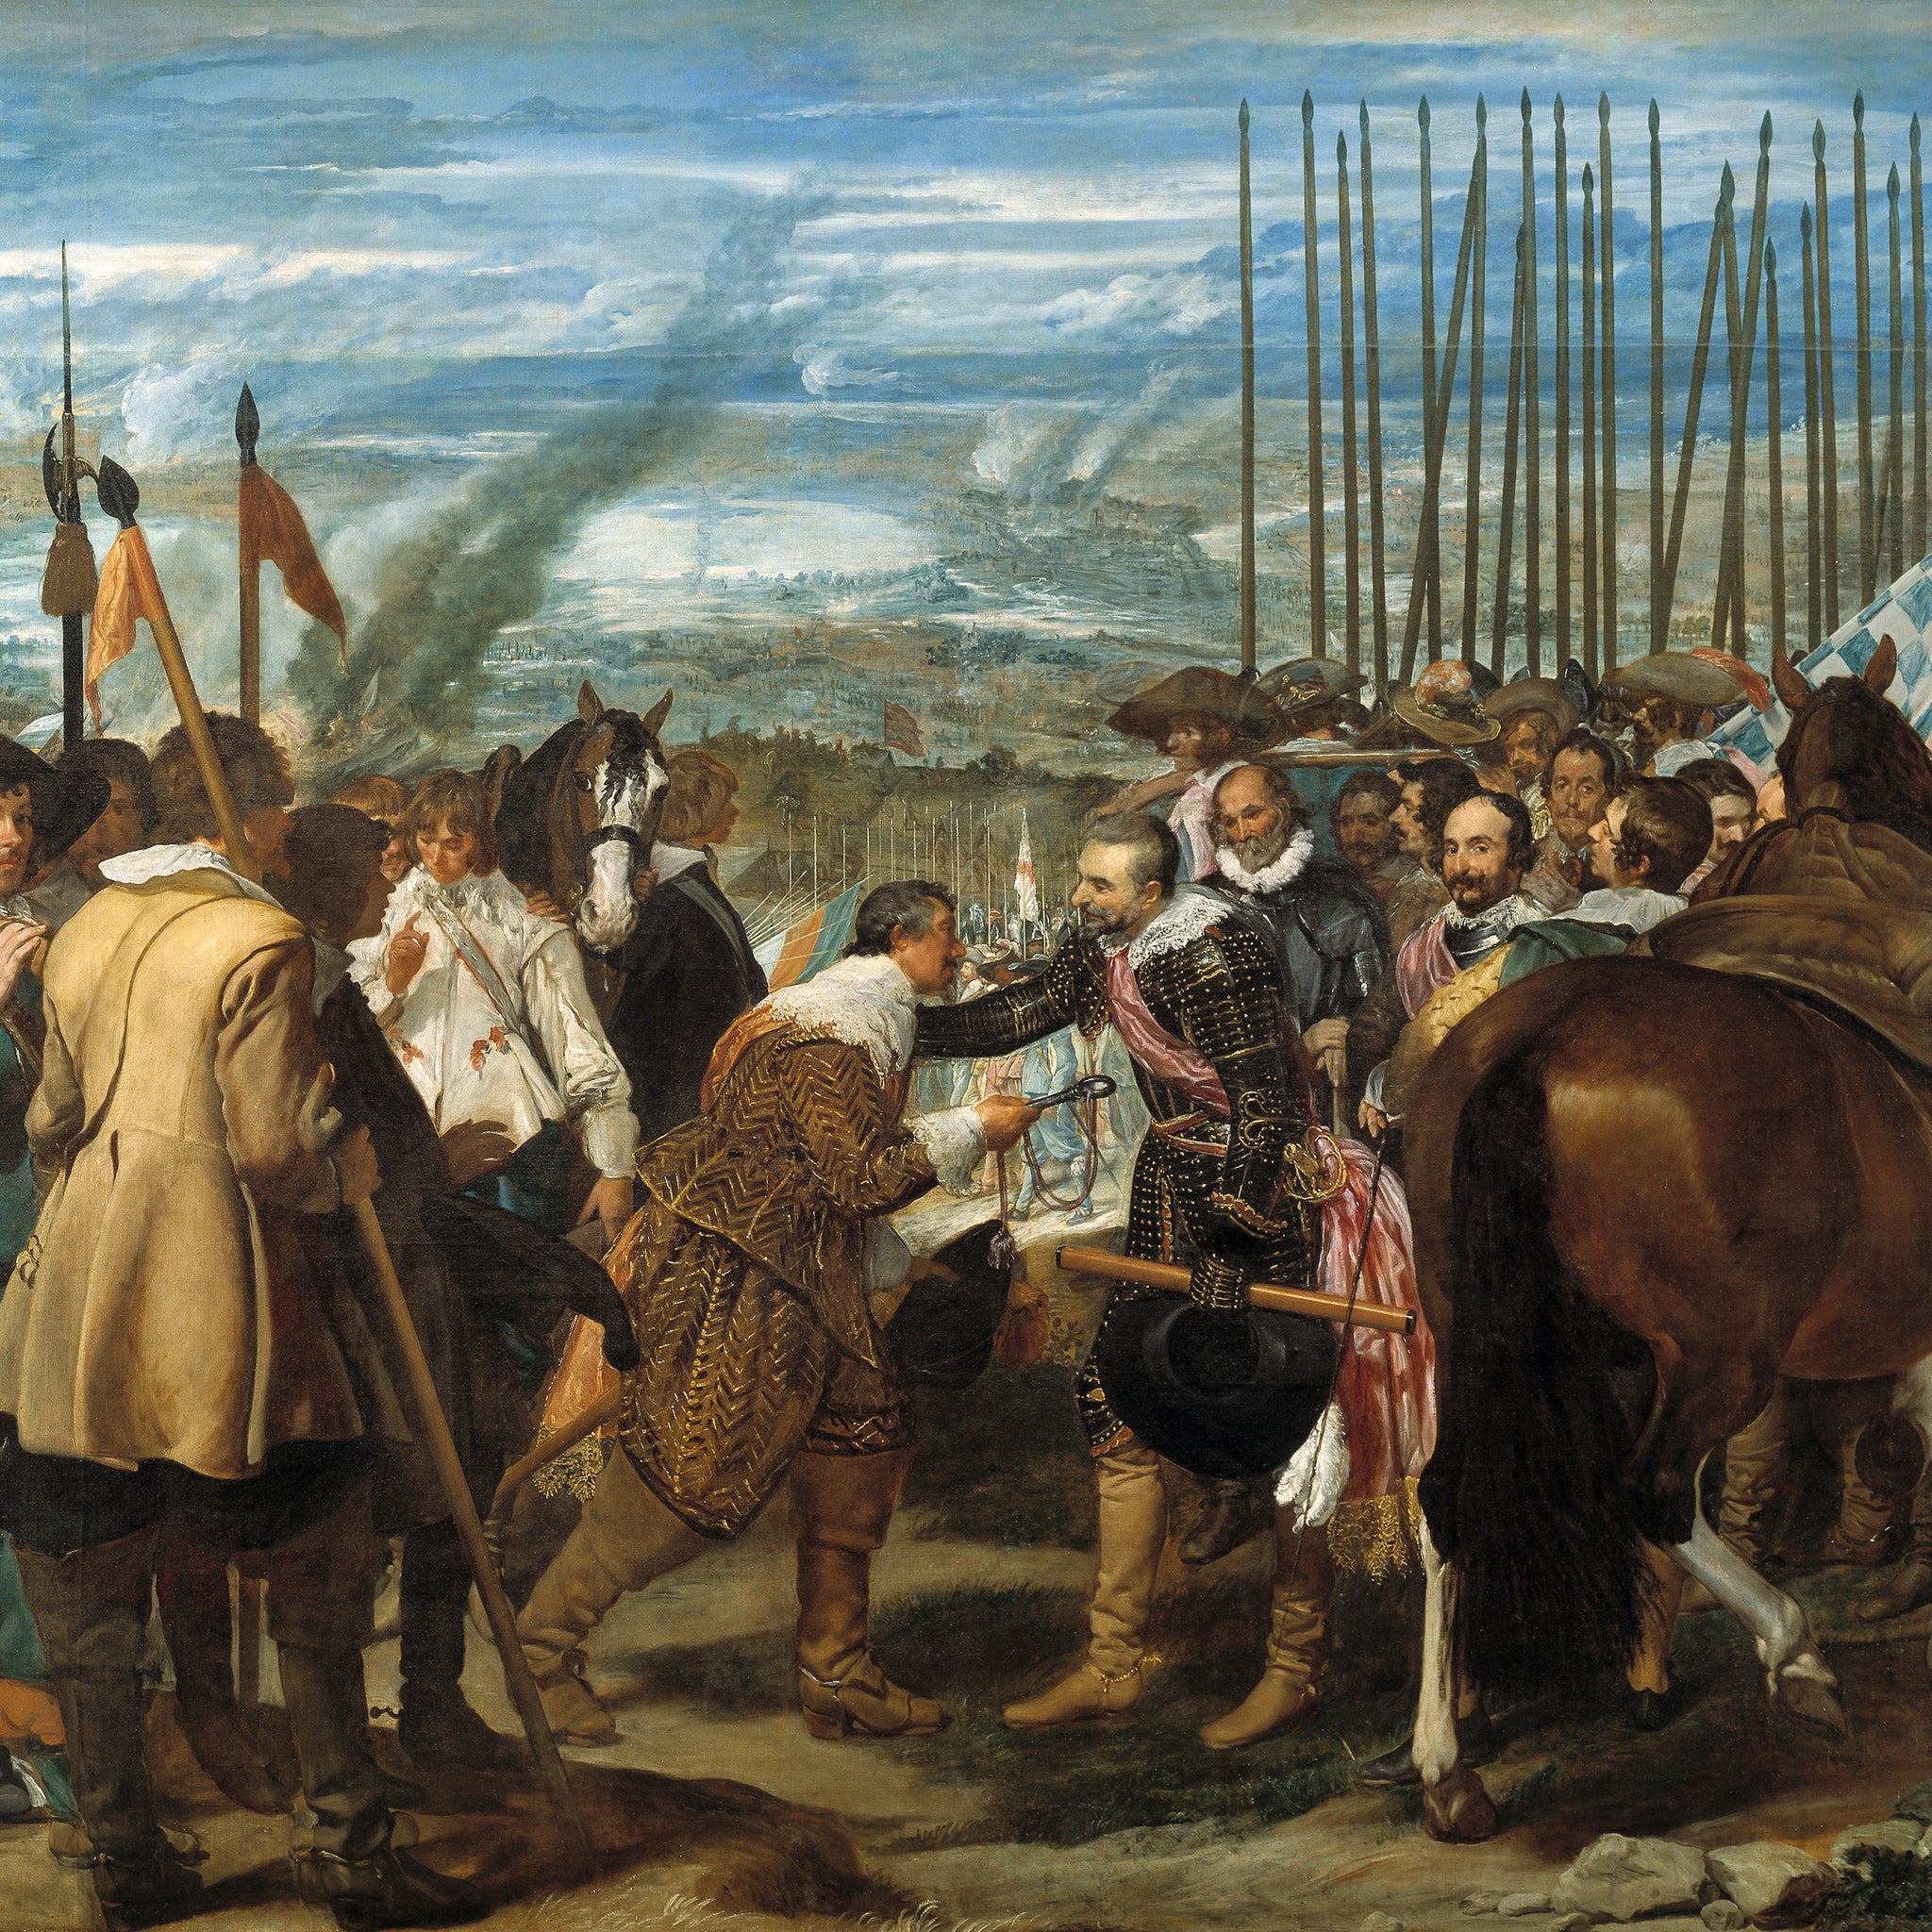 La reddition de Breda - Diego Velázquez